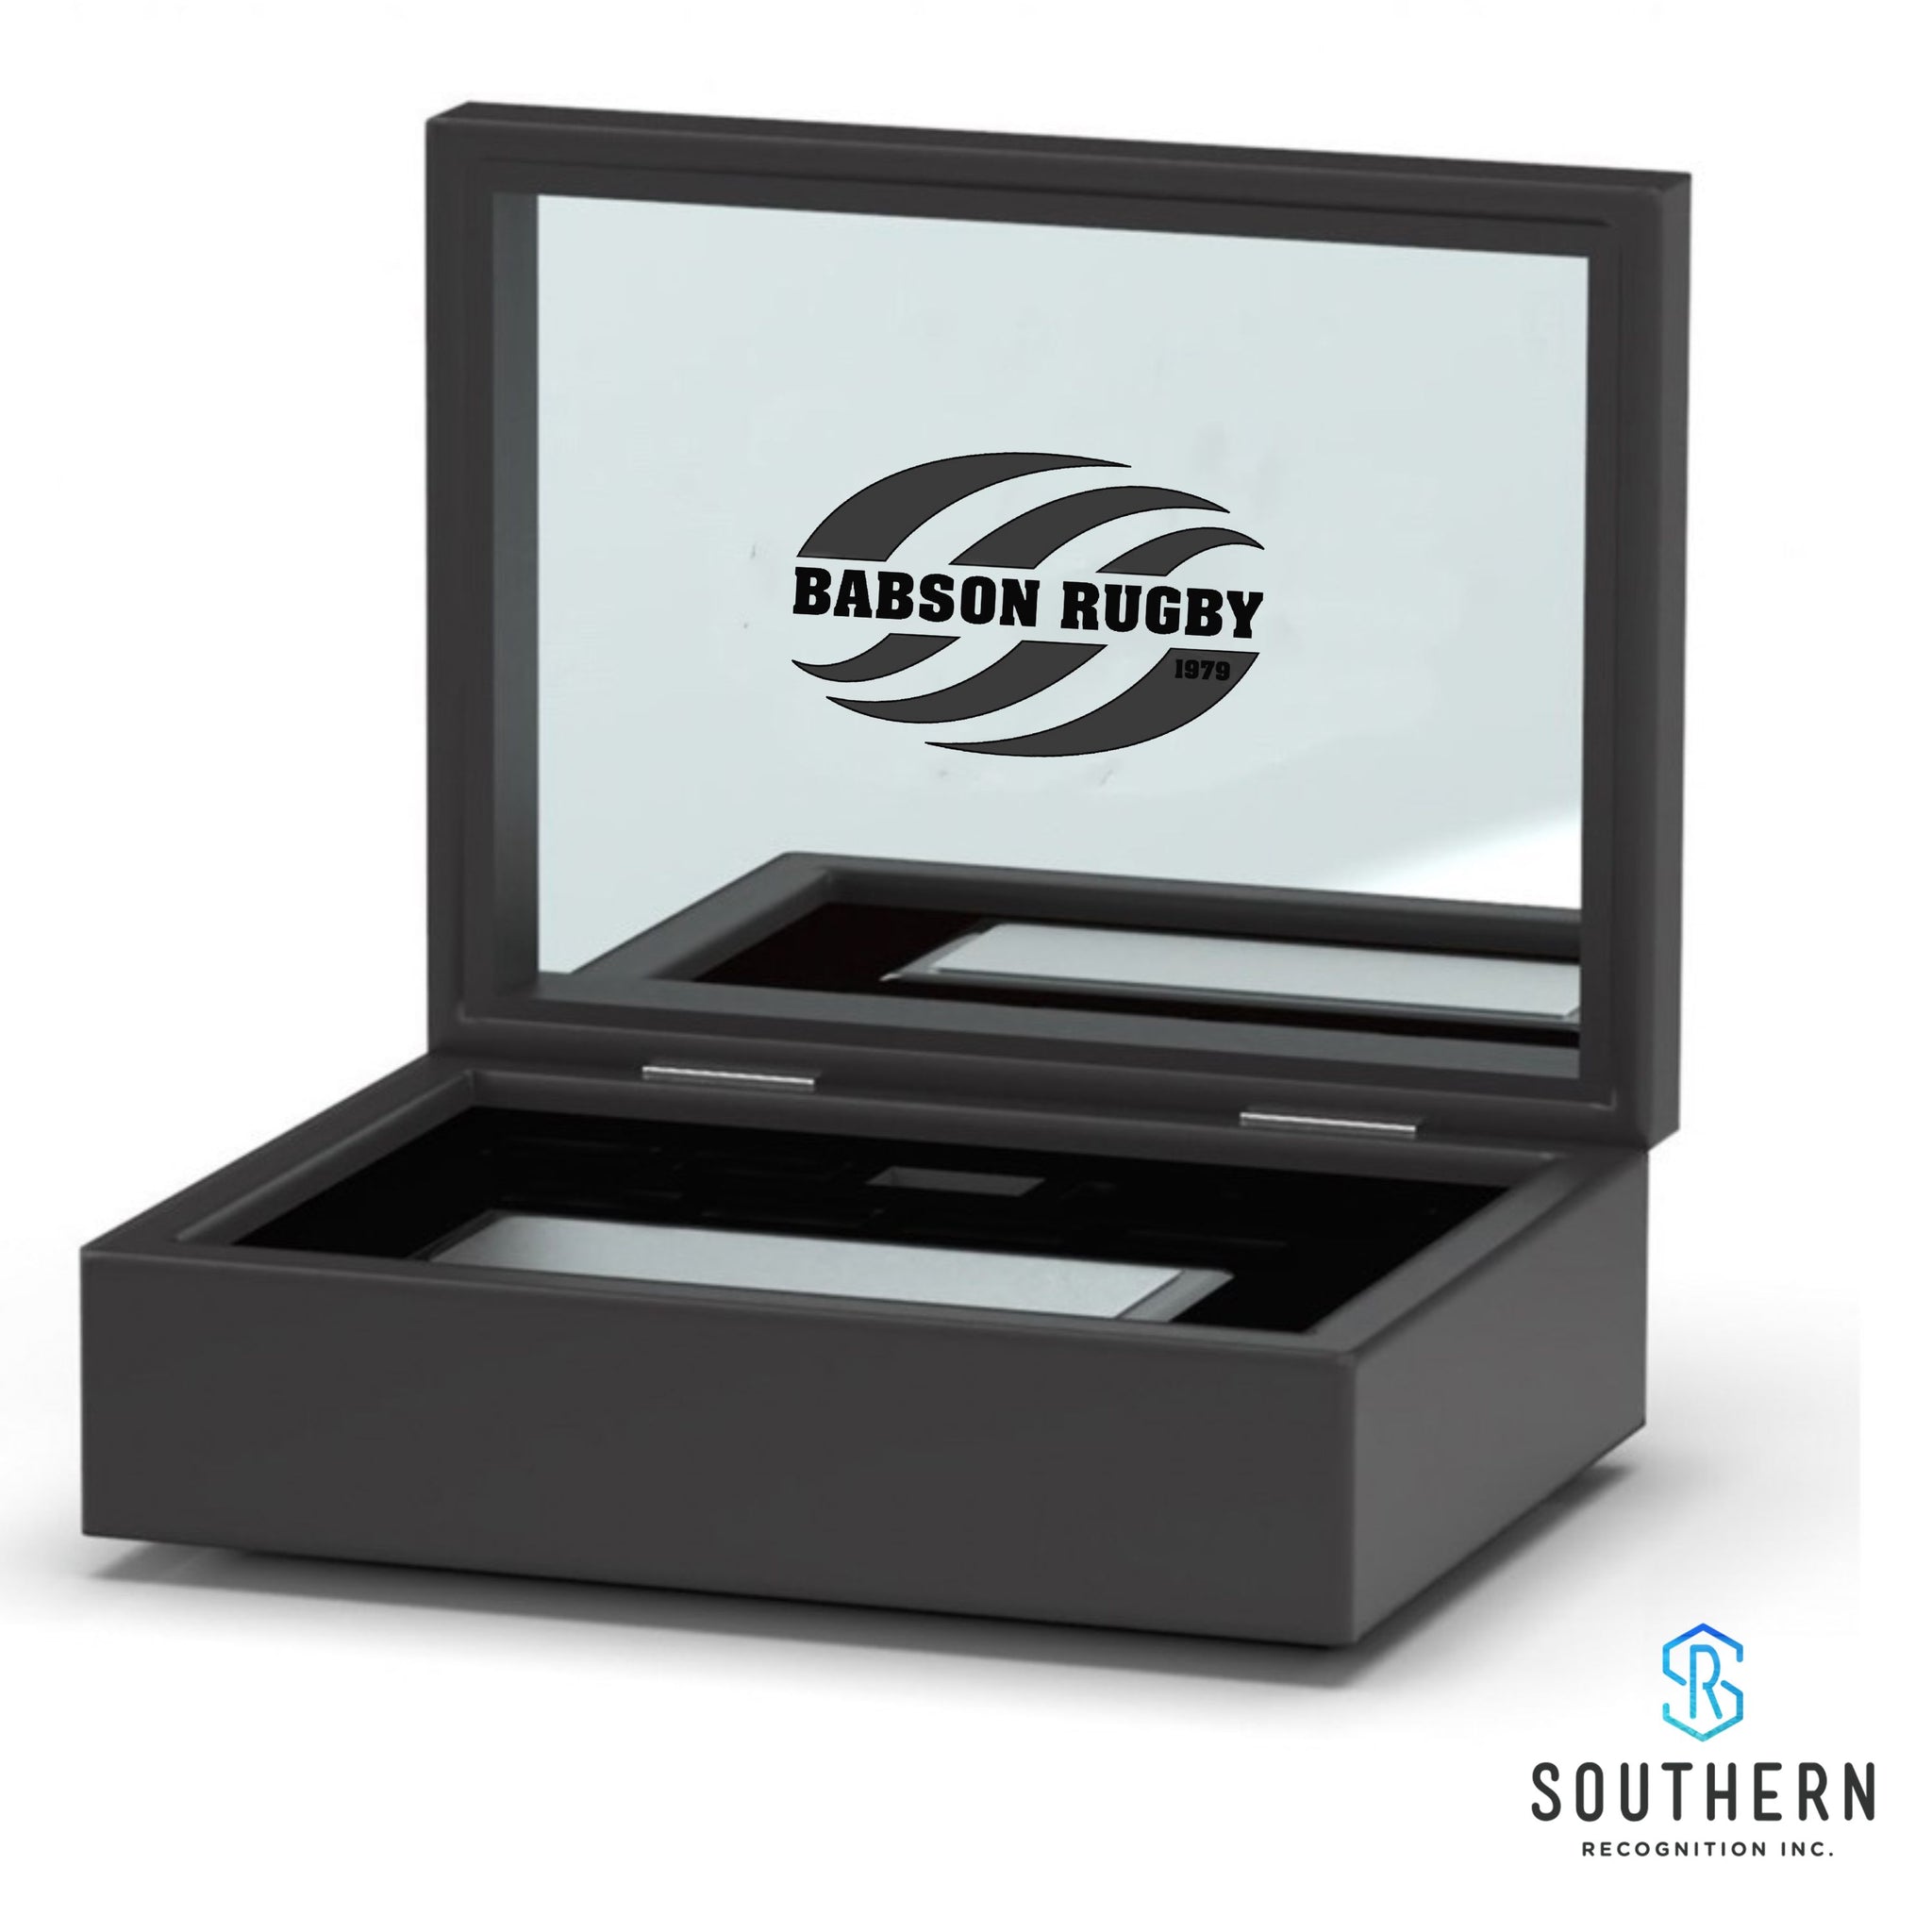 Babson Rugby- Custom Presentation Box